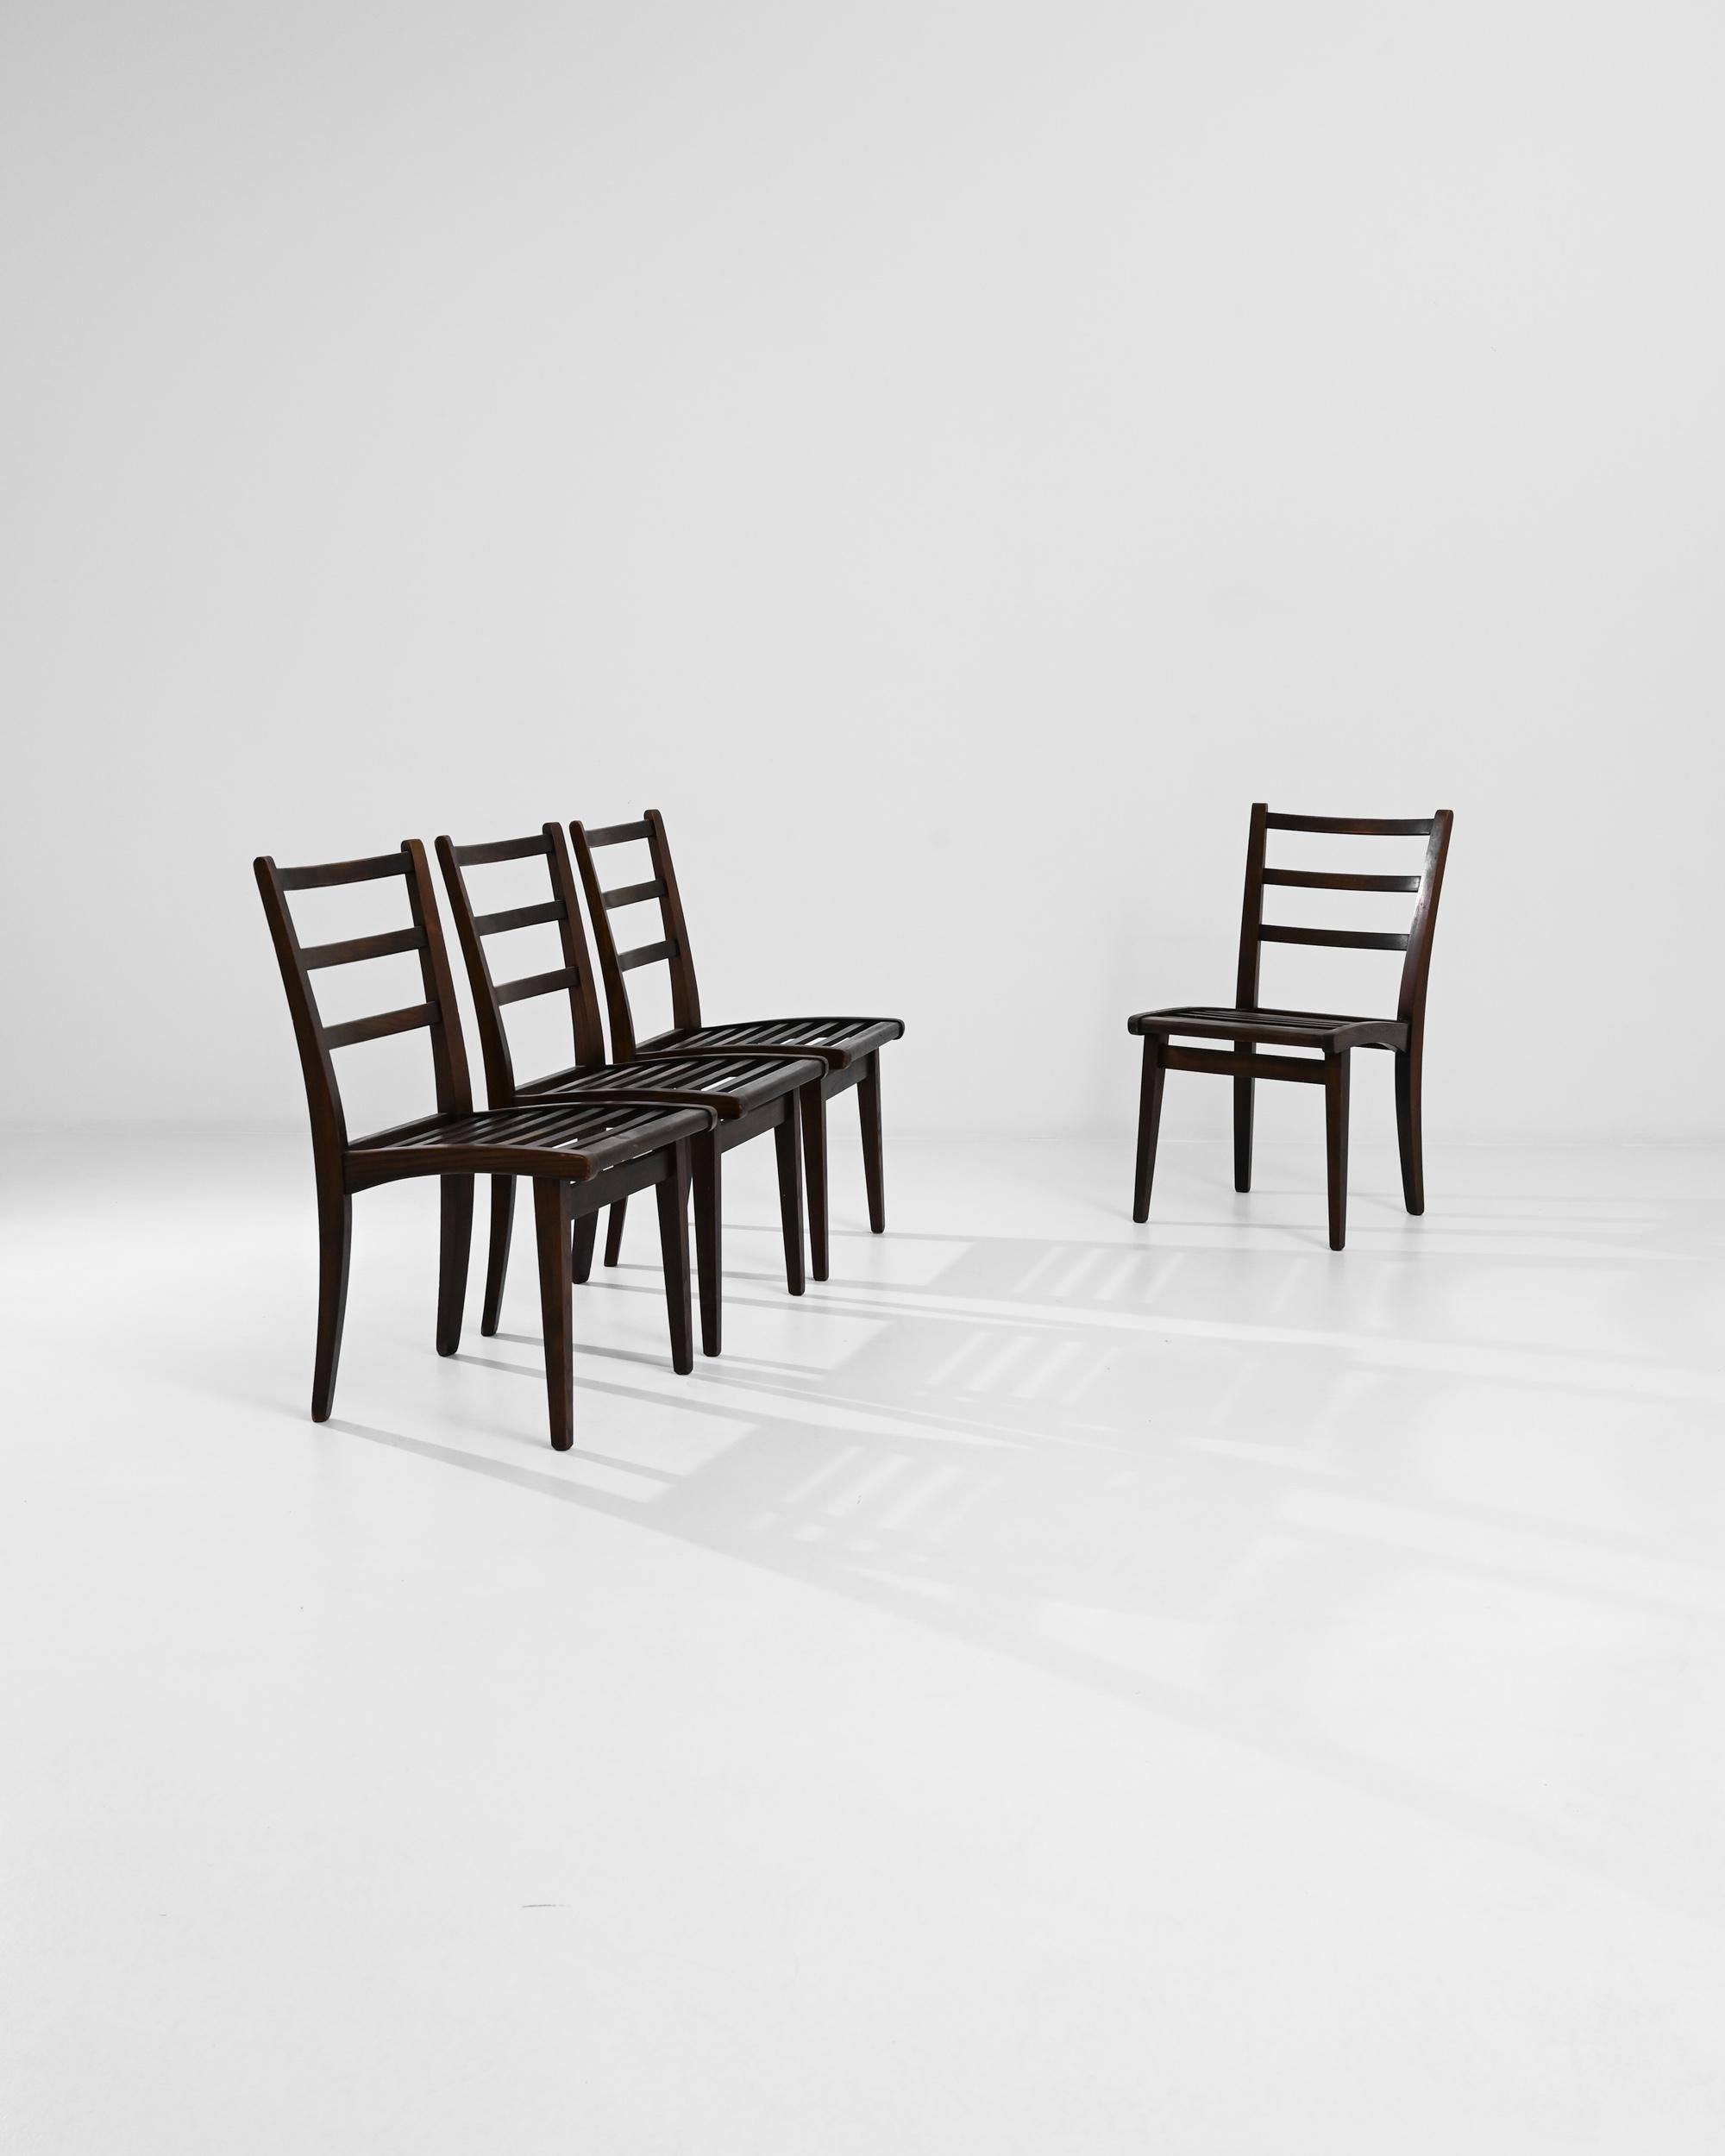 La forme simple mais frappante de ces chaises en bois les met immédiatement à l'aise dans une variété d'espaces intérieurs et extérieurs. Fabriquées dans la Tchécoslovaquie du XXe siècle, les courbes subtiles confèrent une élégance ergonomique au